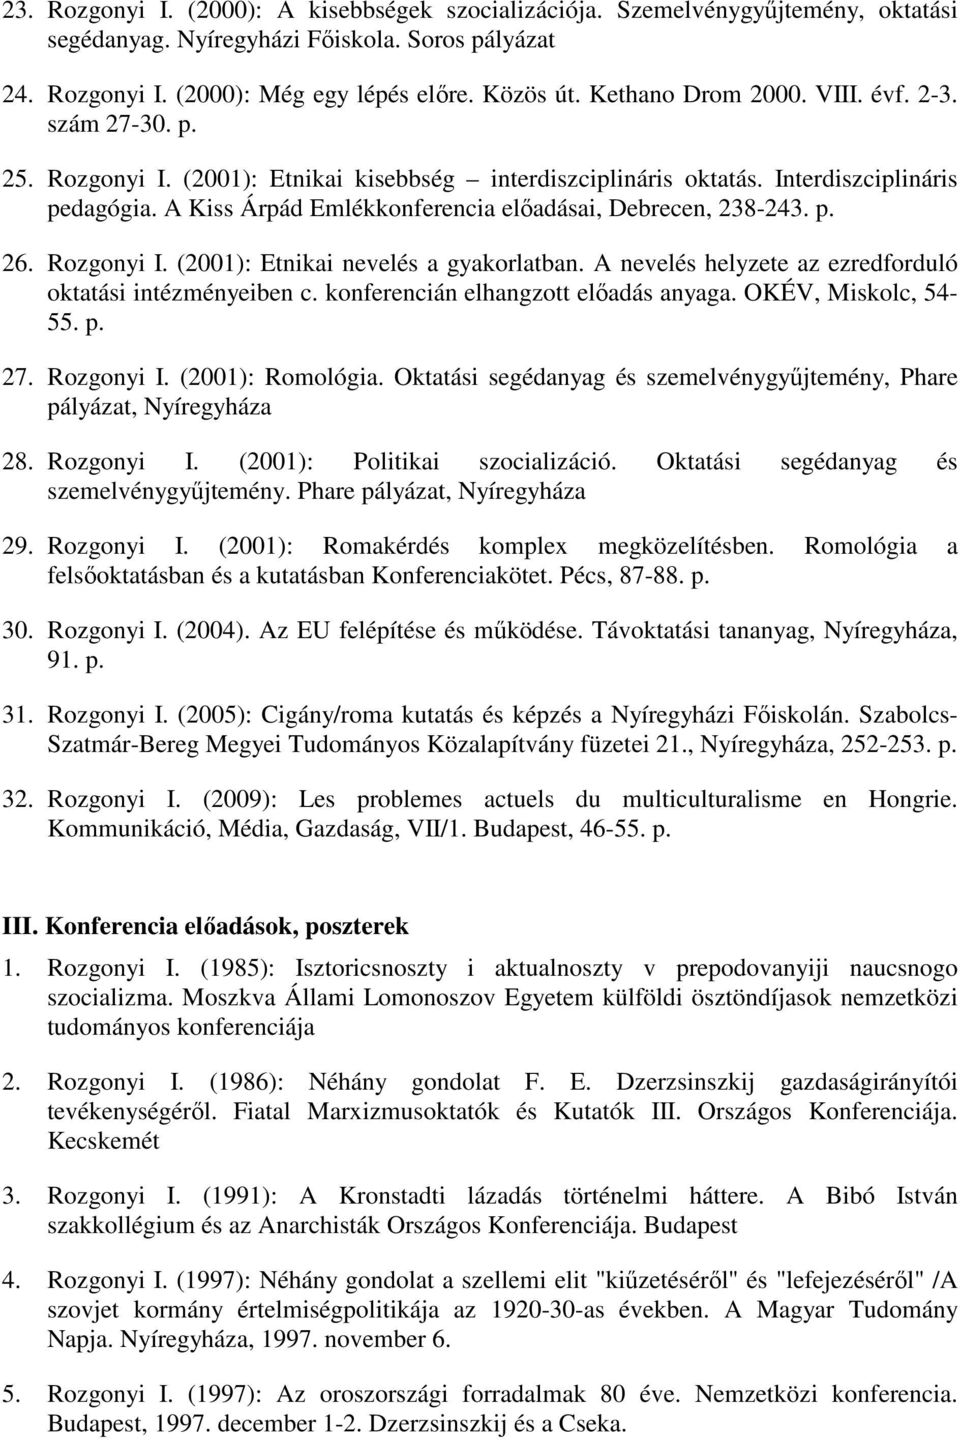 A Kiss Árpád Emlékkonferencia előadásai, Debrecen, 238-243. p. 26. Rozgonyi I. (2001): Etnikai nevelés a gyakorlatban. A nevelés helyzete az ezredforduló oktatási intézményeiben c.